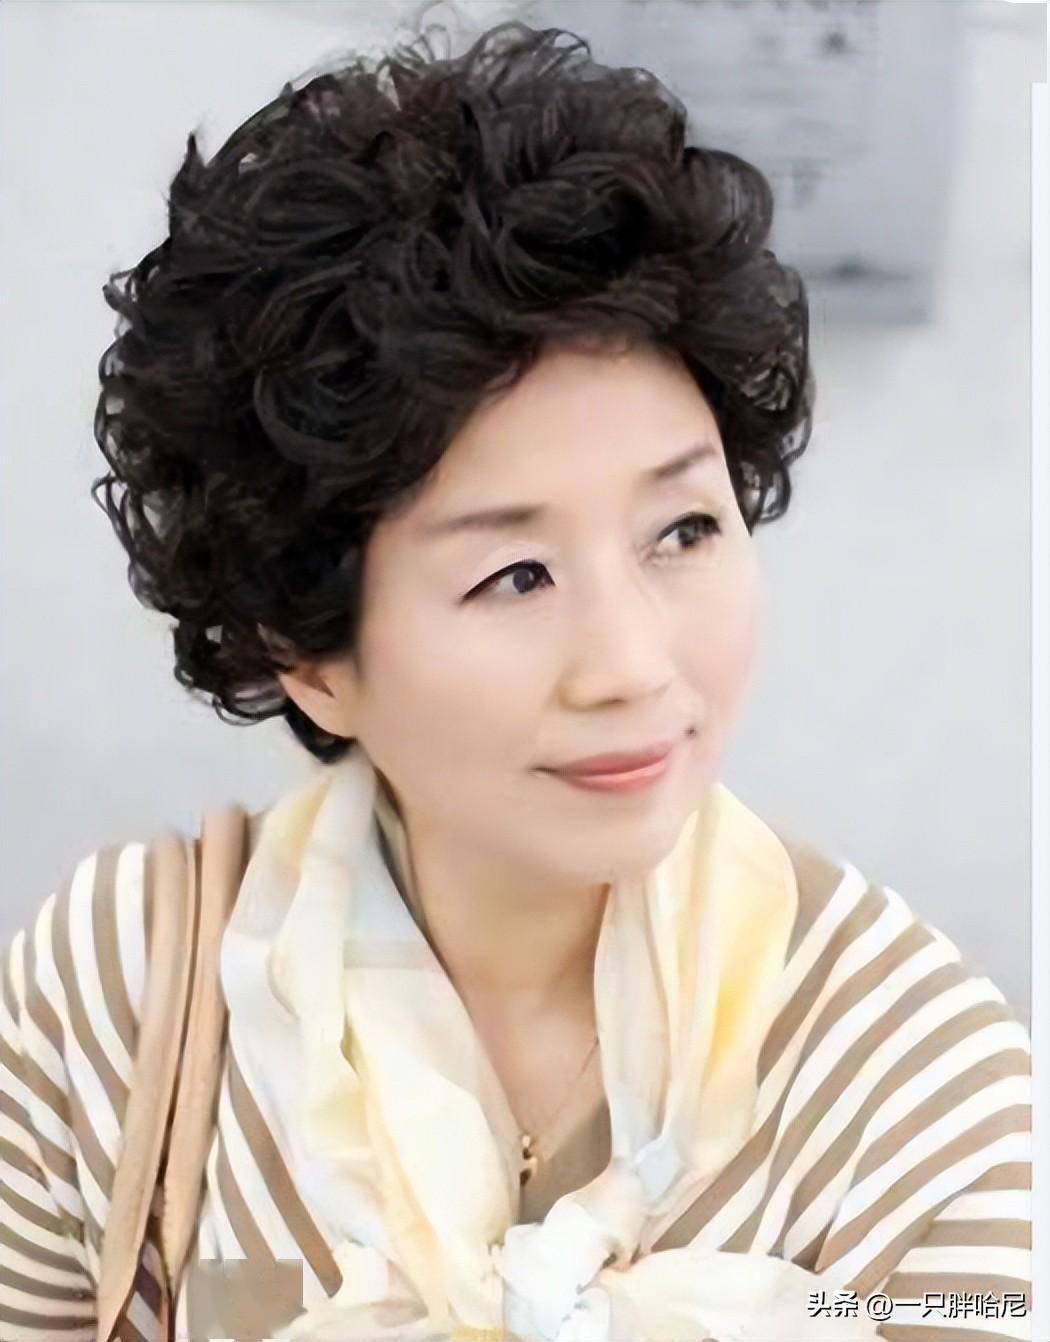 超短羊毛卷【1】常见的标准老年头发型▍赵雅芝的时髦思路之一,蔡烫